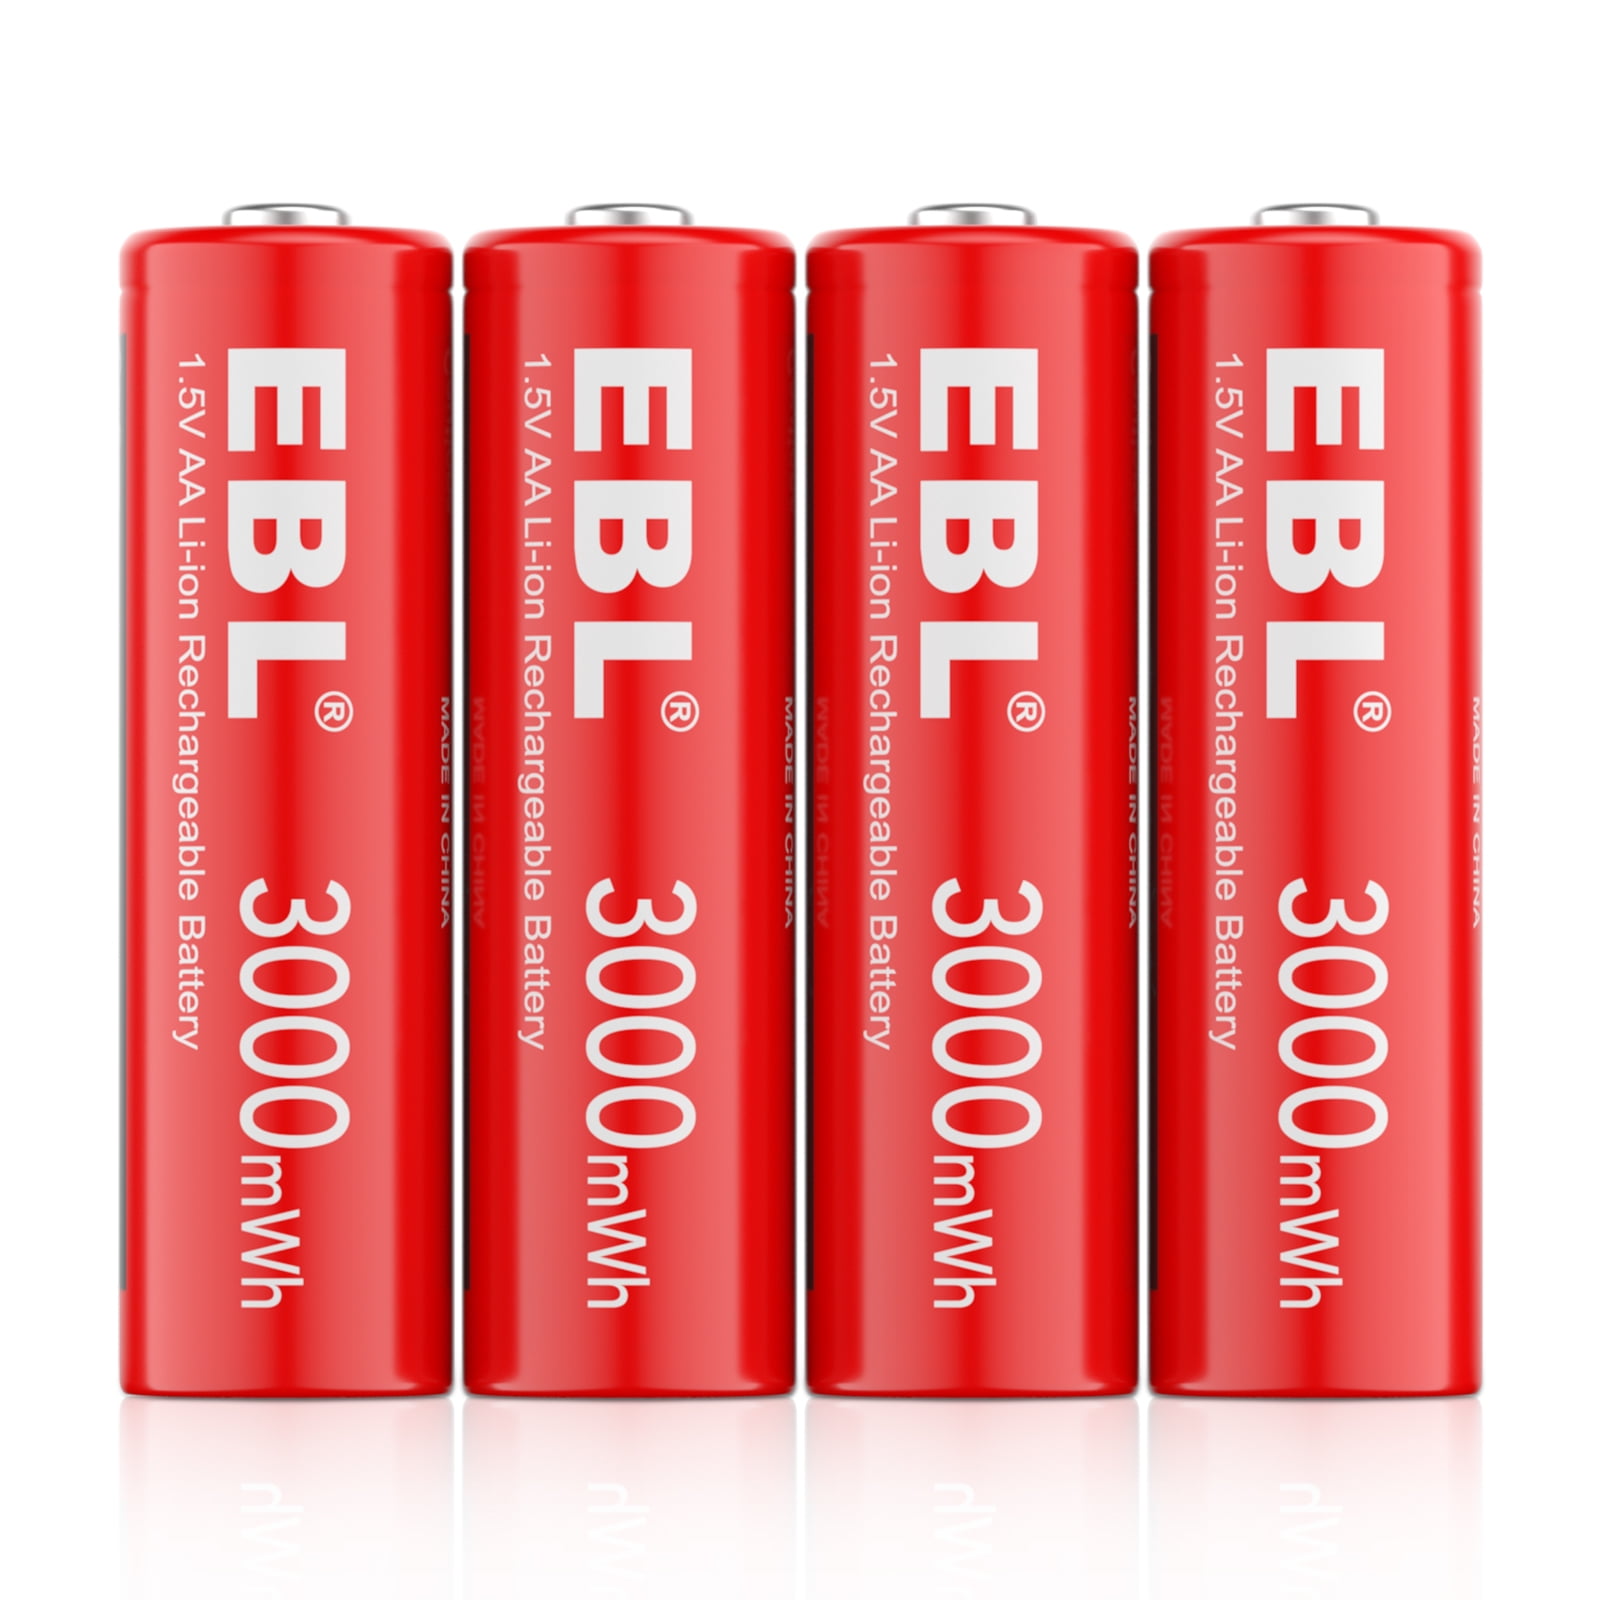 Buy EBL 14500 Lithium-Ion Rechargeable Batteries 800mAh 3.7V – EBLOfficial